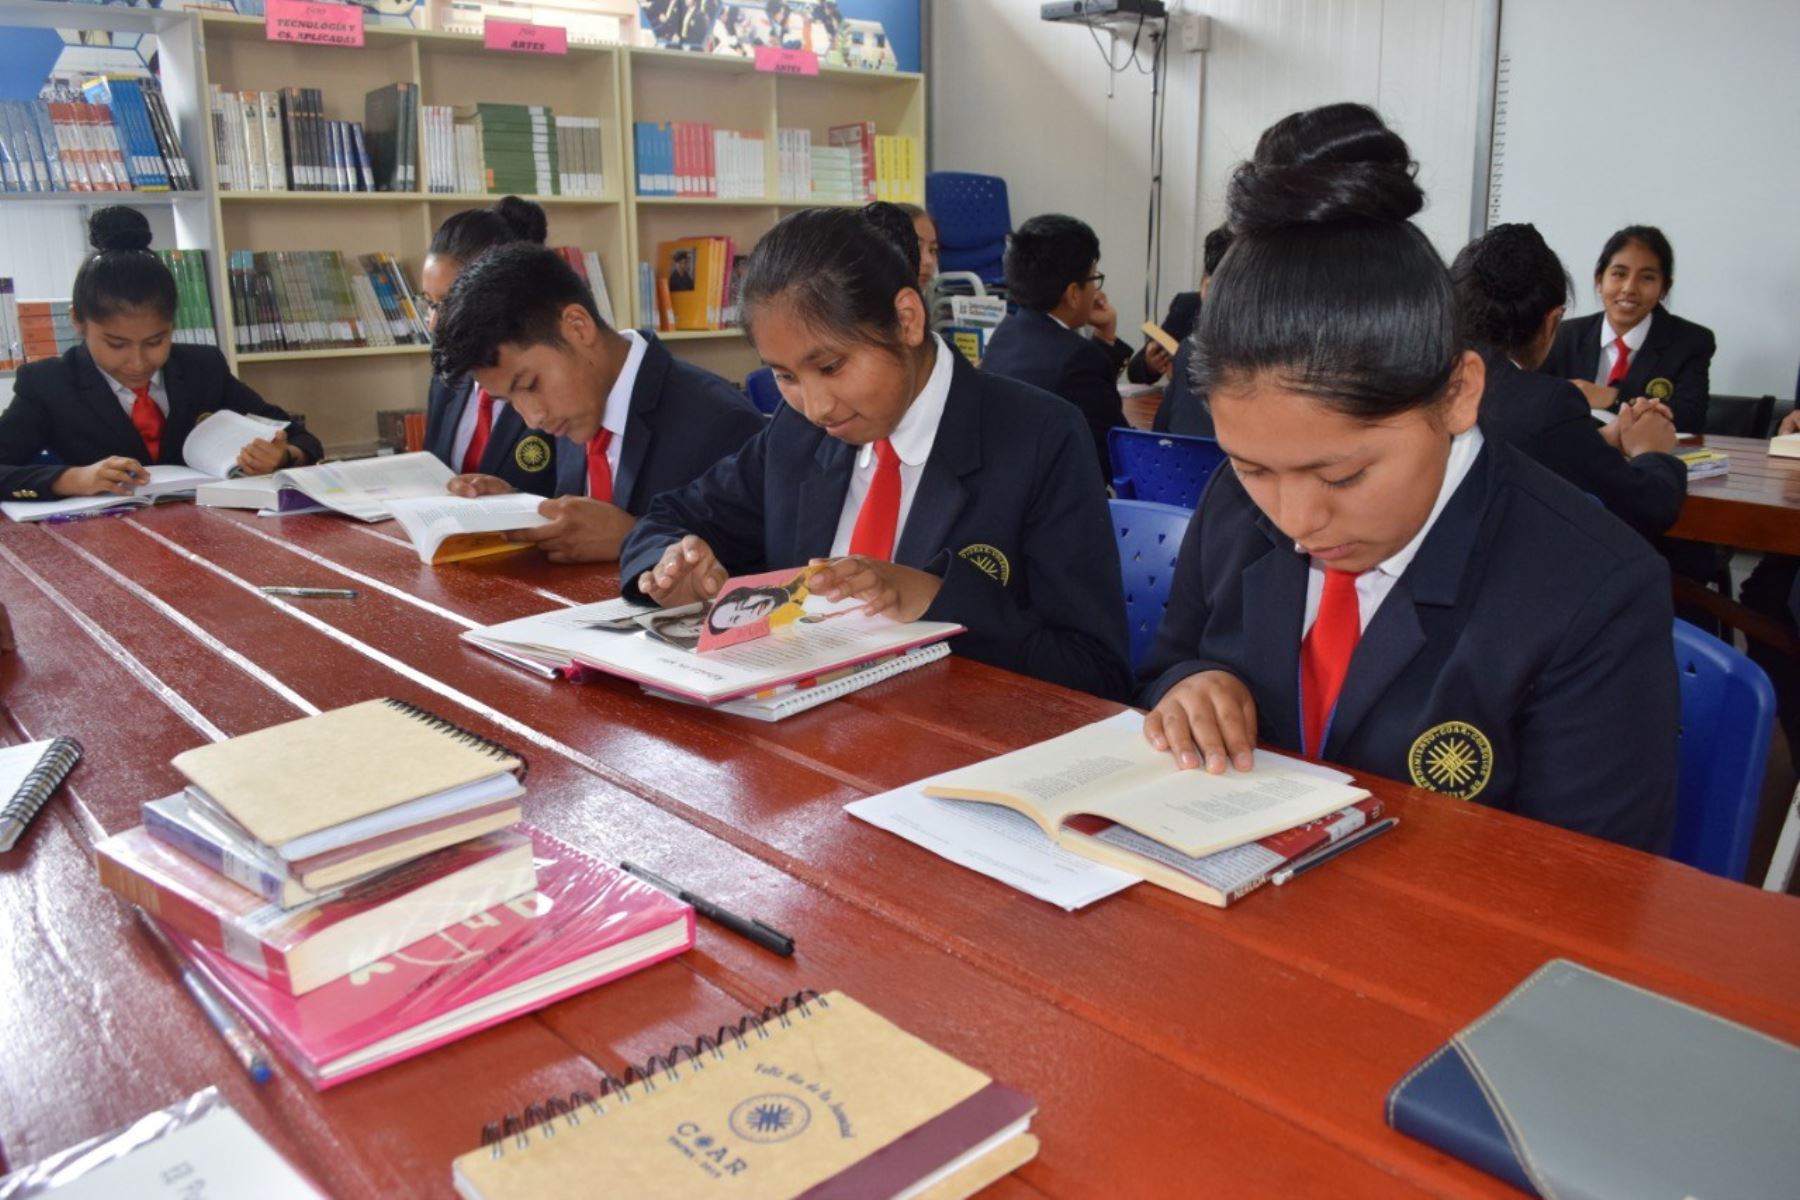 El Ministerio de Educación (Minedu) acelera las gestiones para iniciar el próximo año la construcción de la moderna infraestructura educativa del Colegio de Alto Rendimiento (COAR) de Tacna,